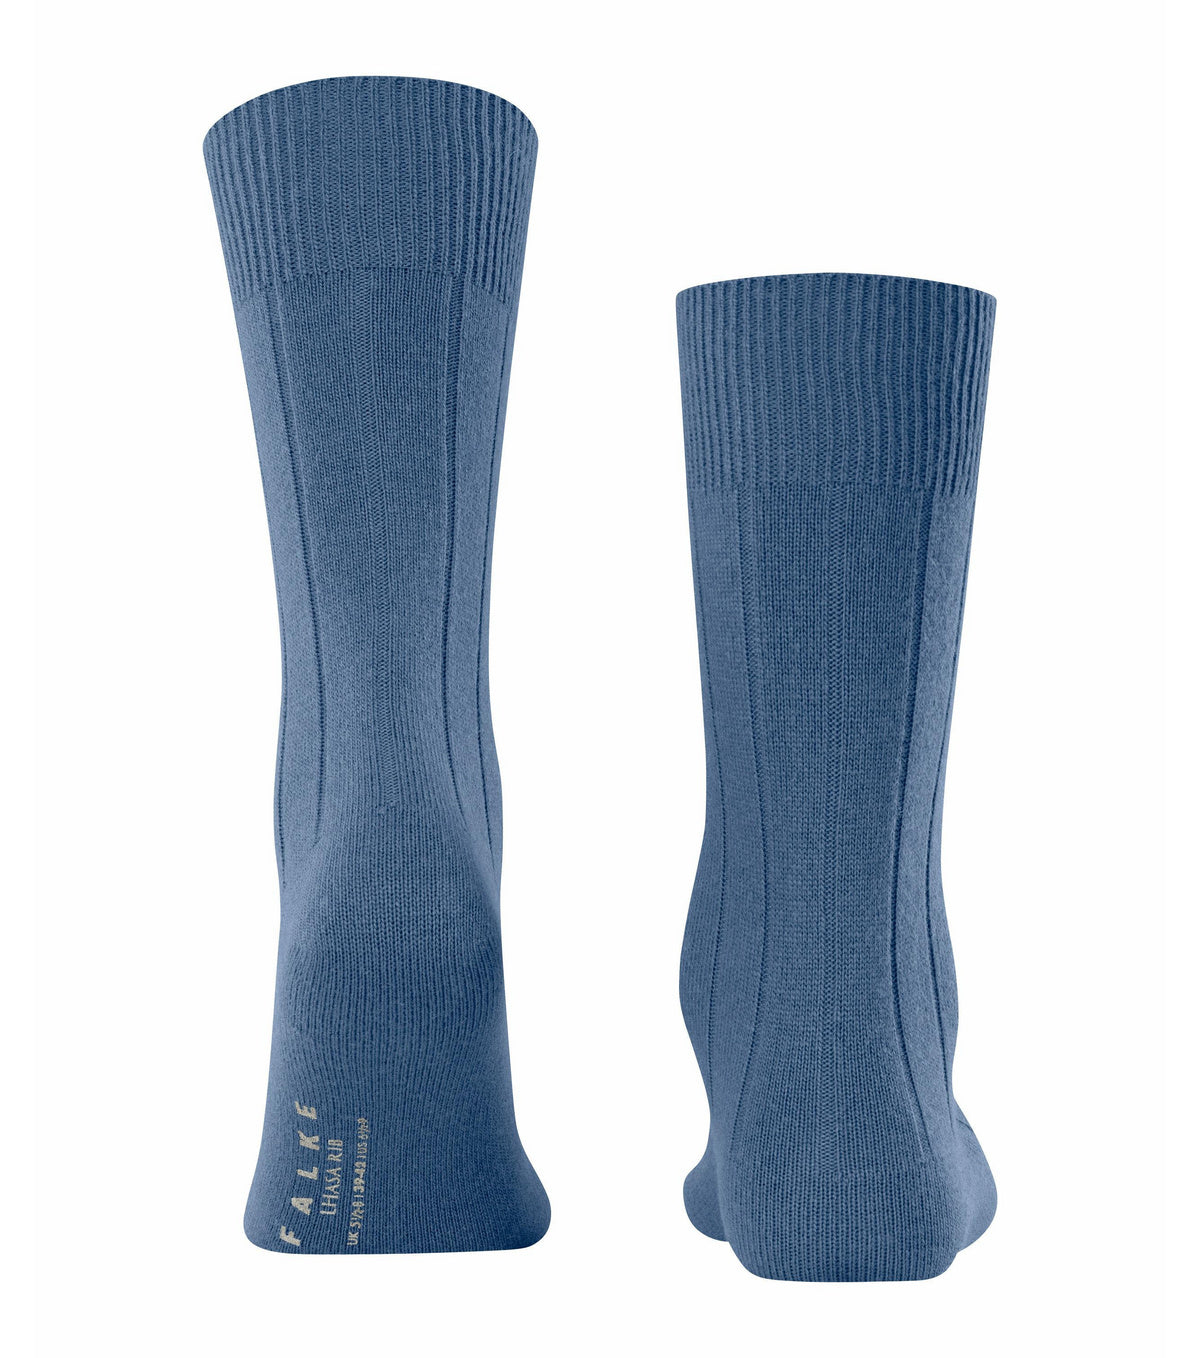 Cornflower Blue Lhasa rib socks by Falke